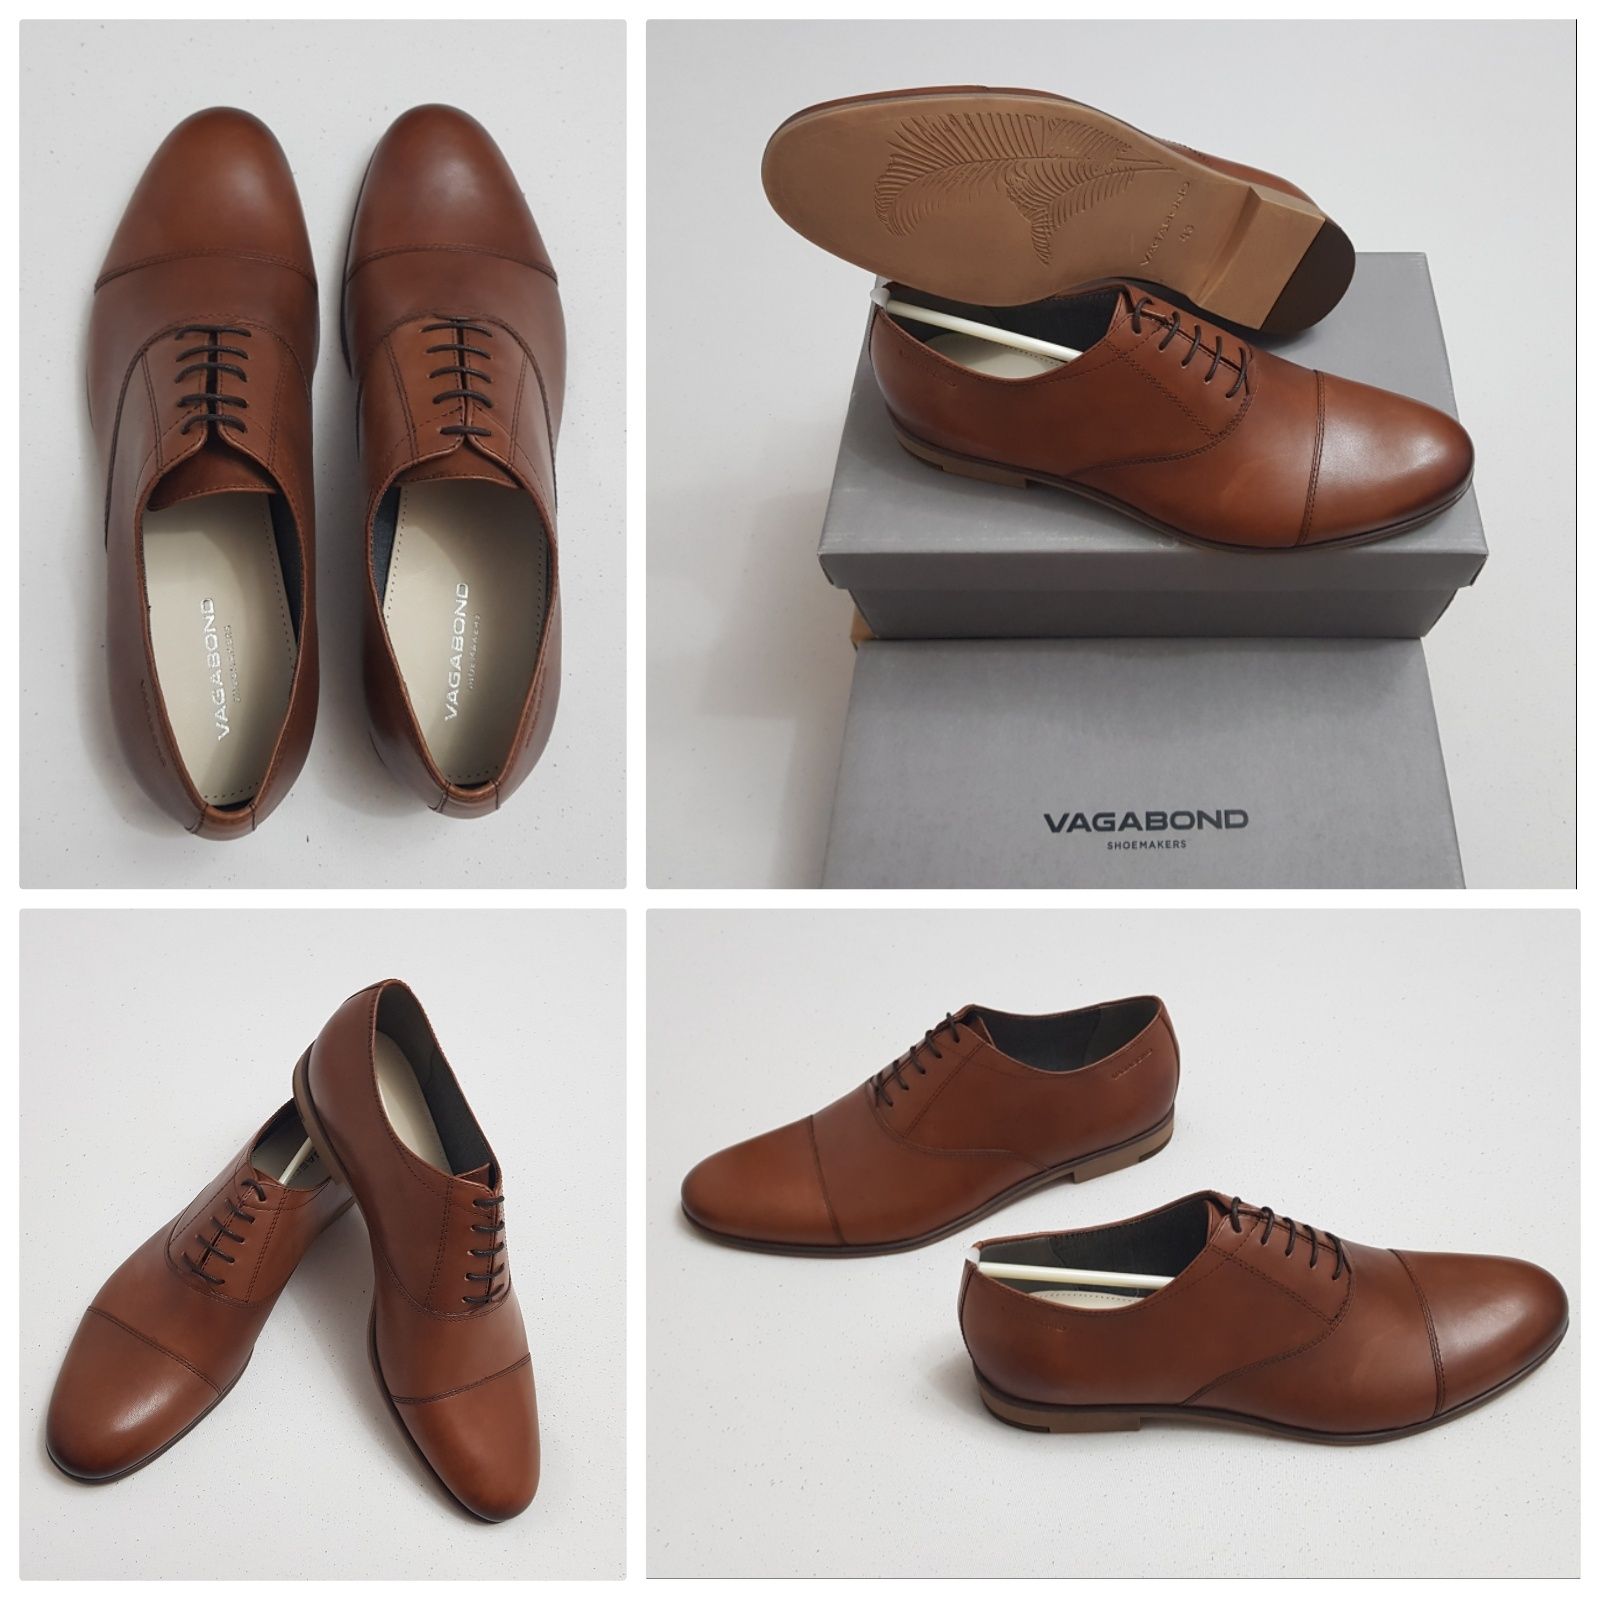 Pantofi casual VAGABOND Lindhope, piele naturală, cognac nr. 43 si 44